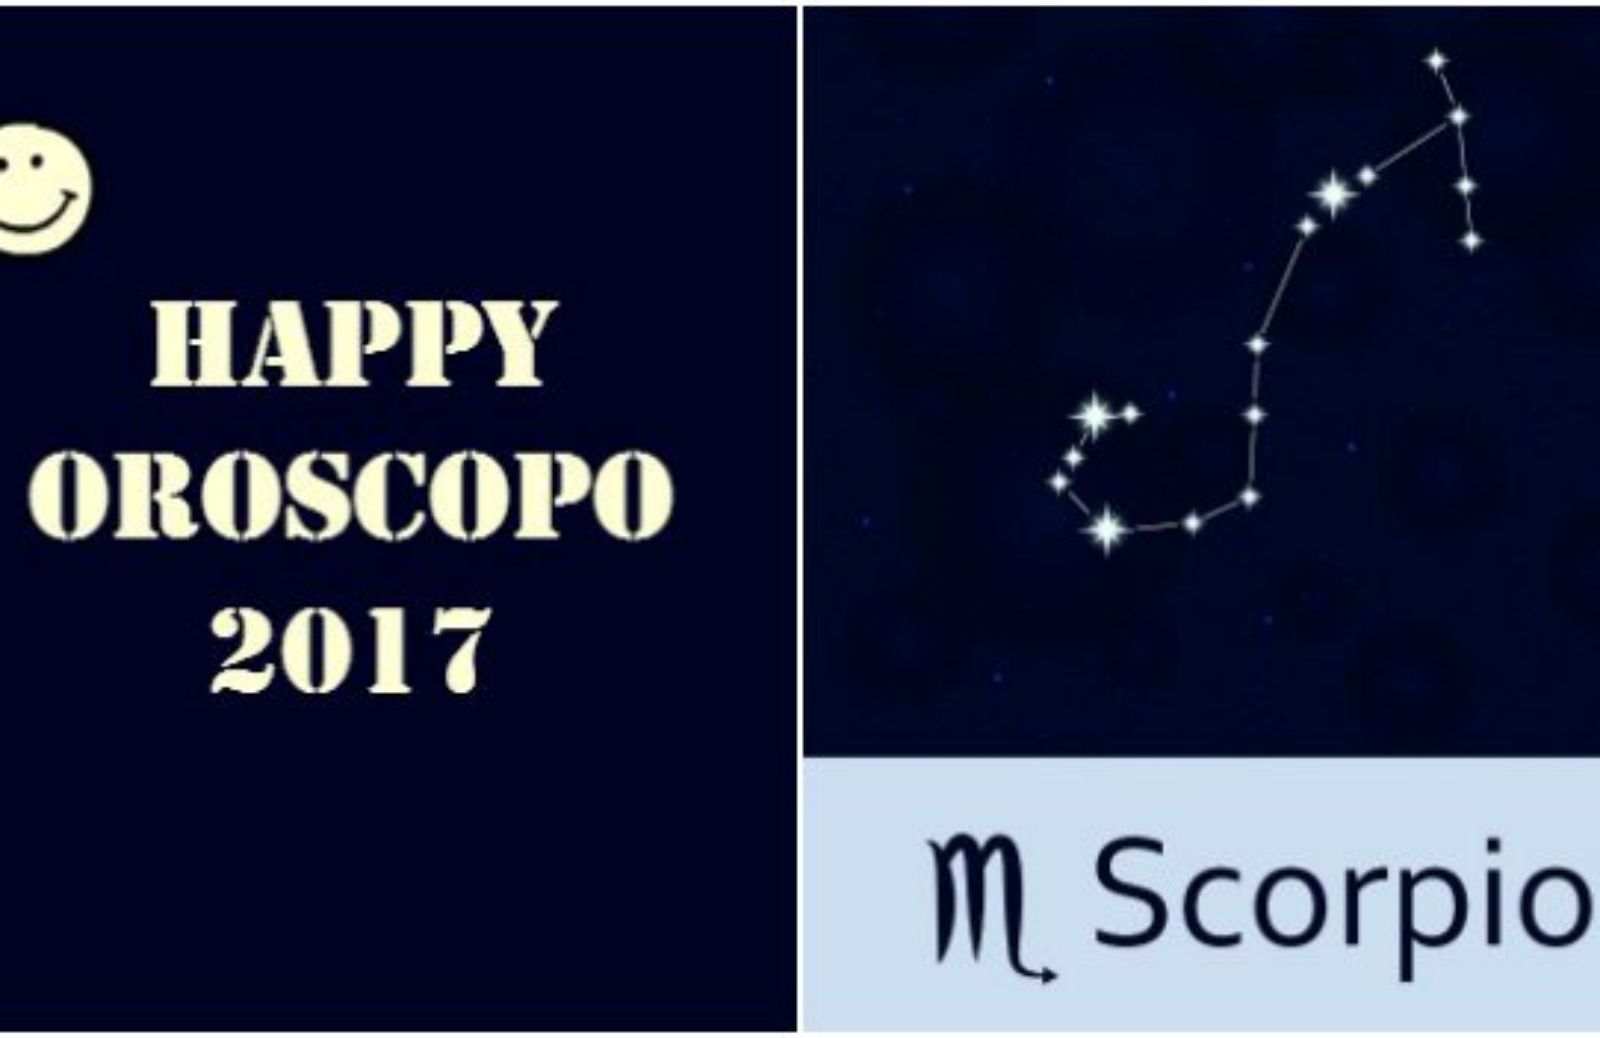 Happy Oroscopo 2017: il segno dello Scorpione